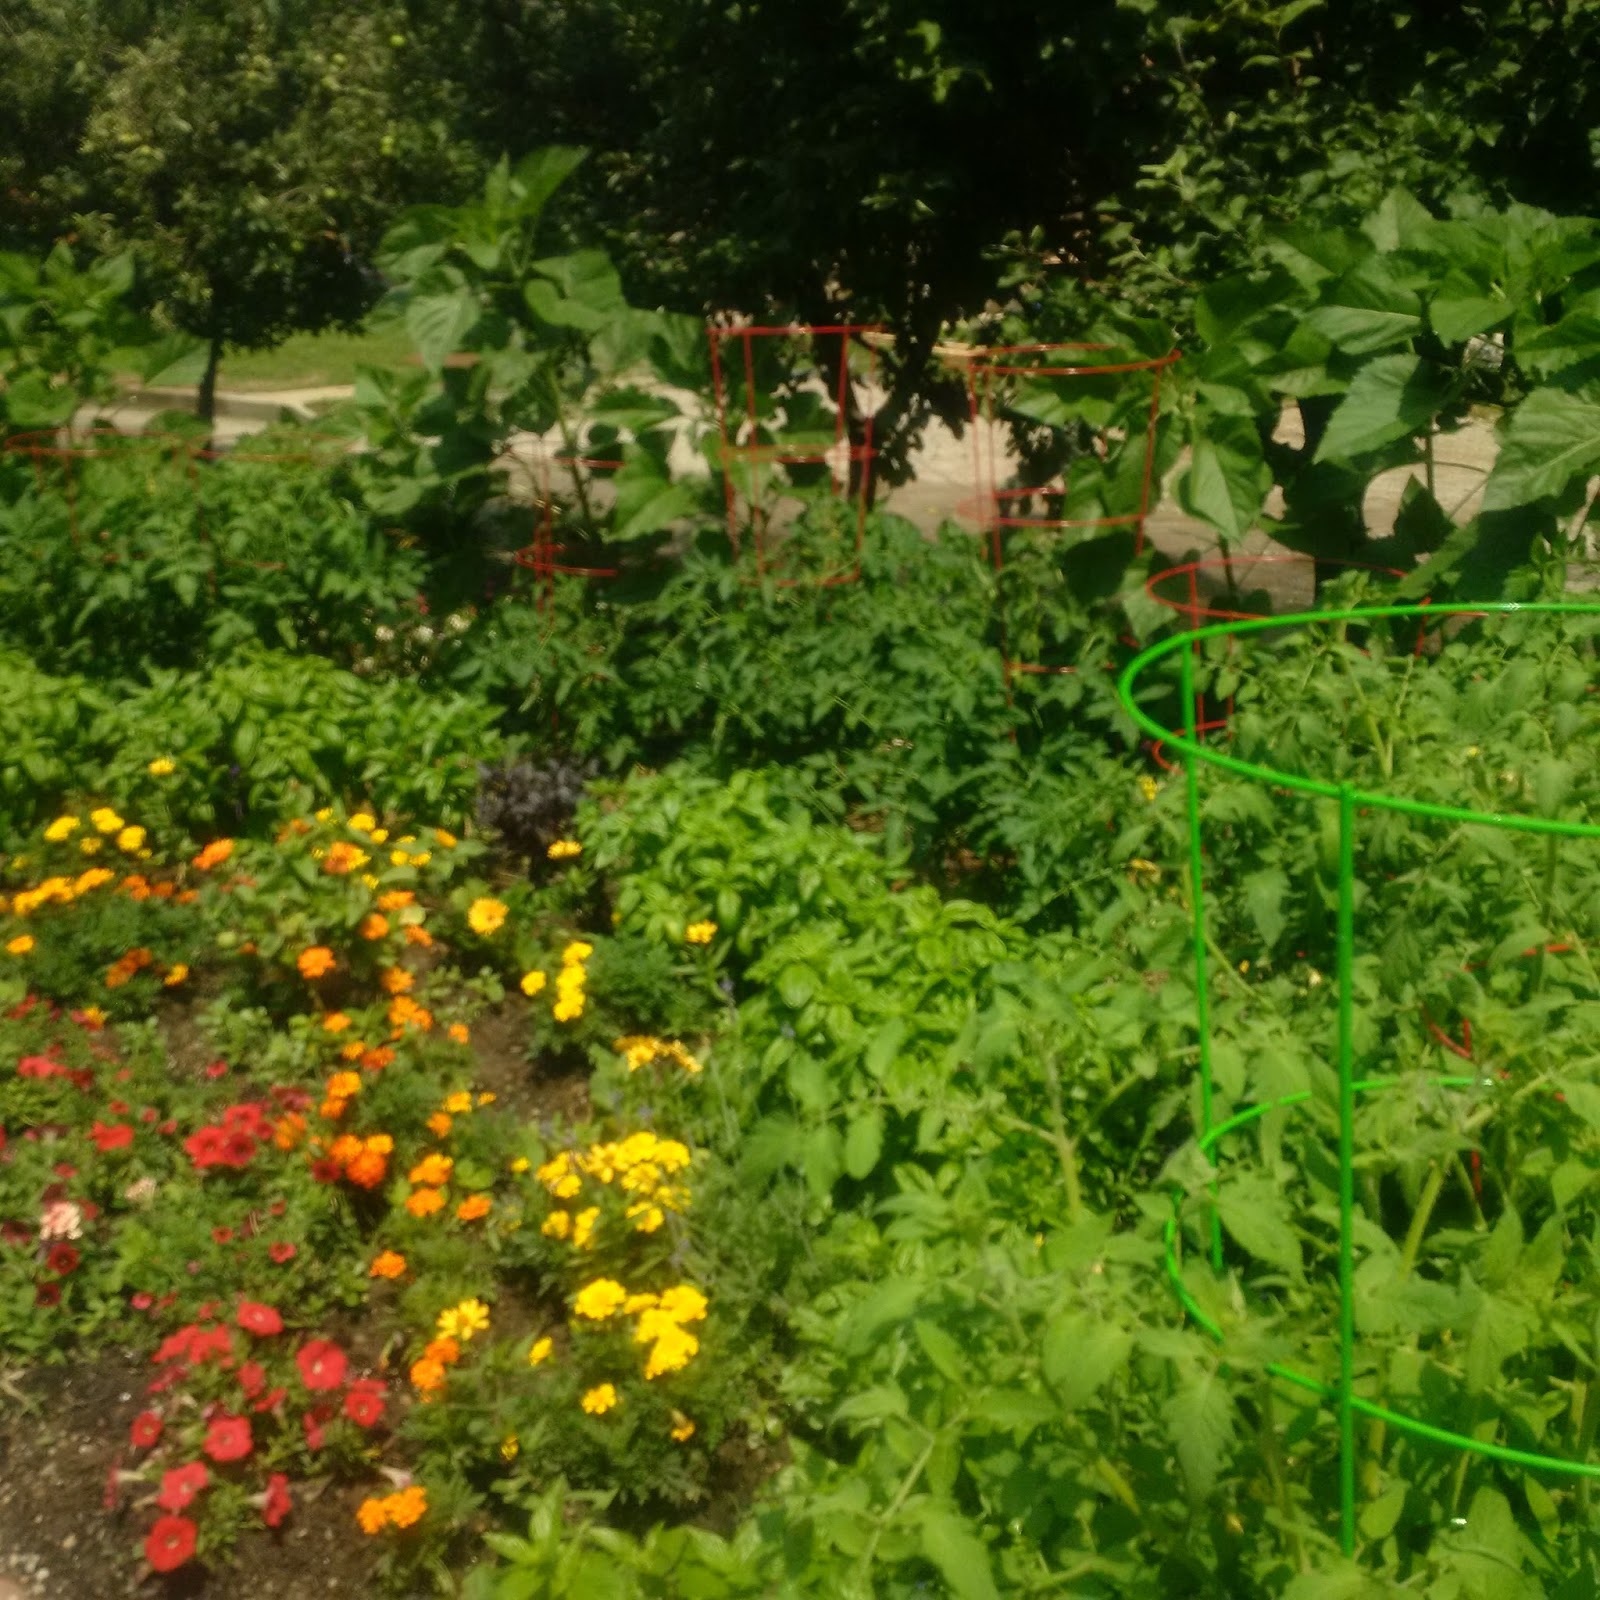 Stoddart Avenue Community Garden: Like a Watered Garden